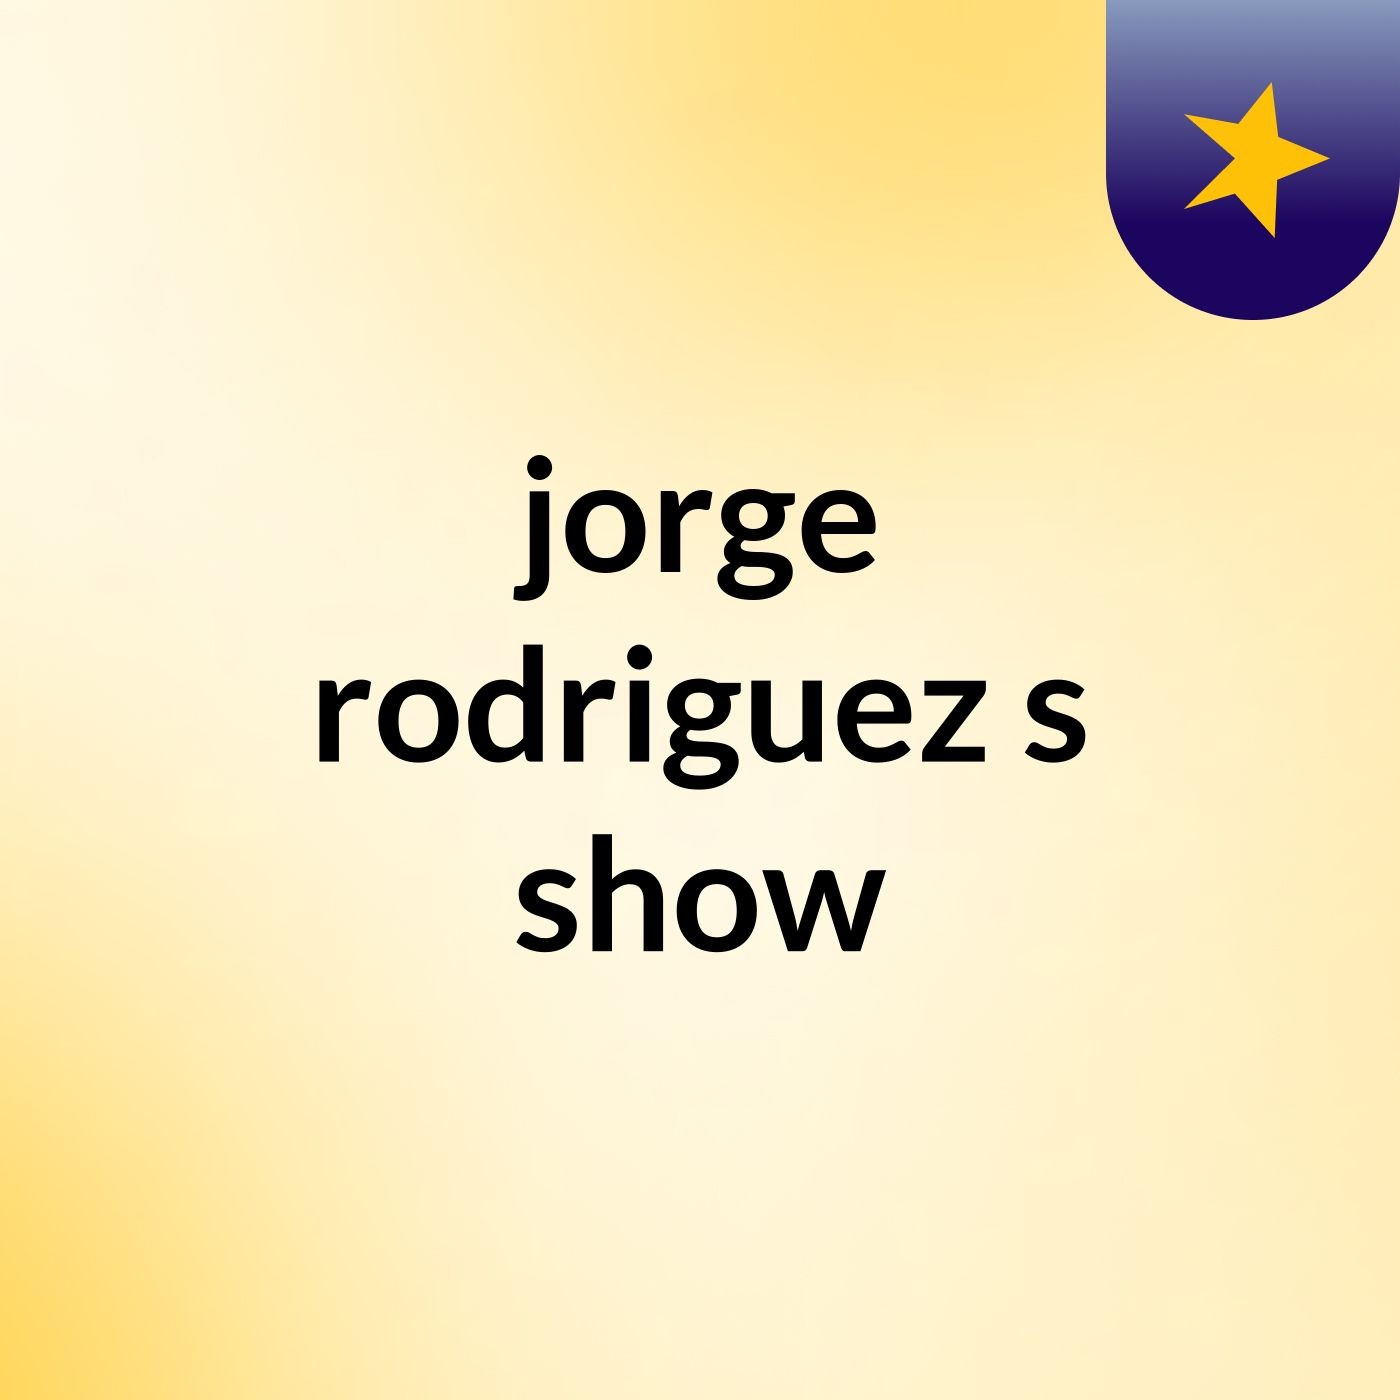 jorge rodriguez's show